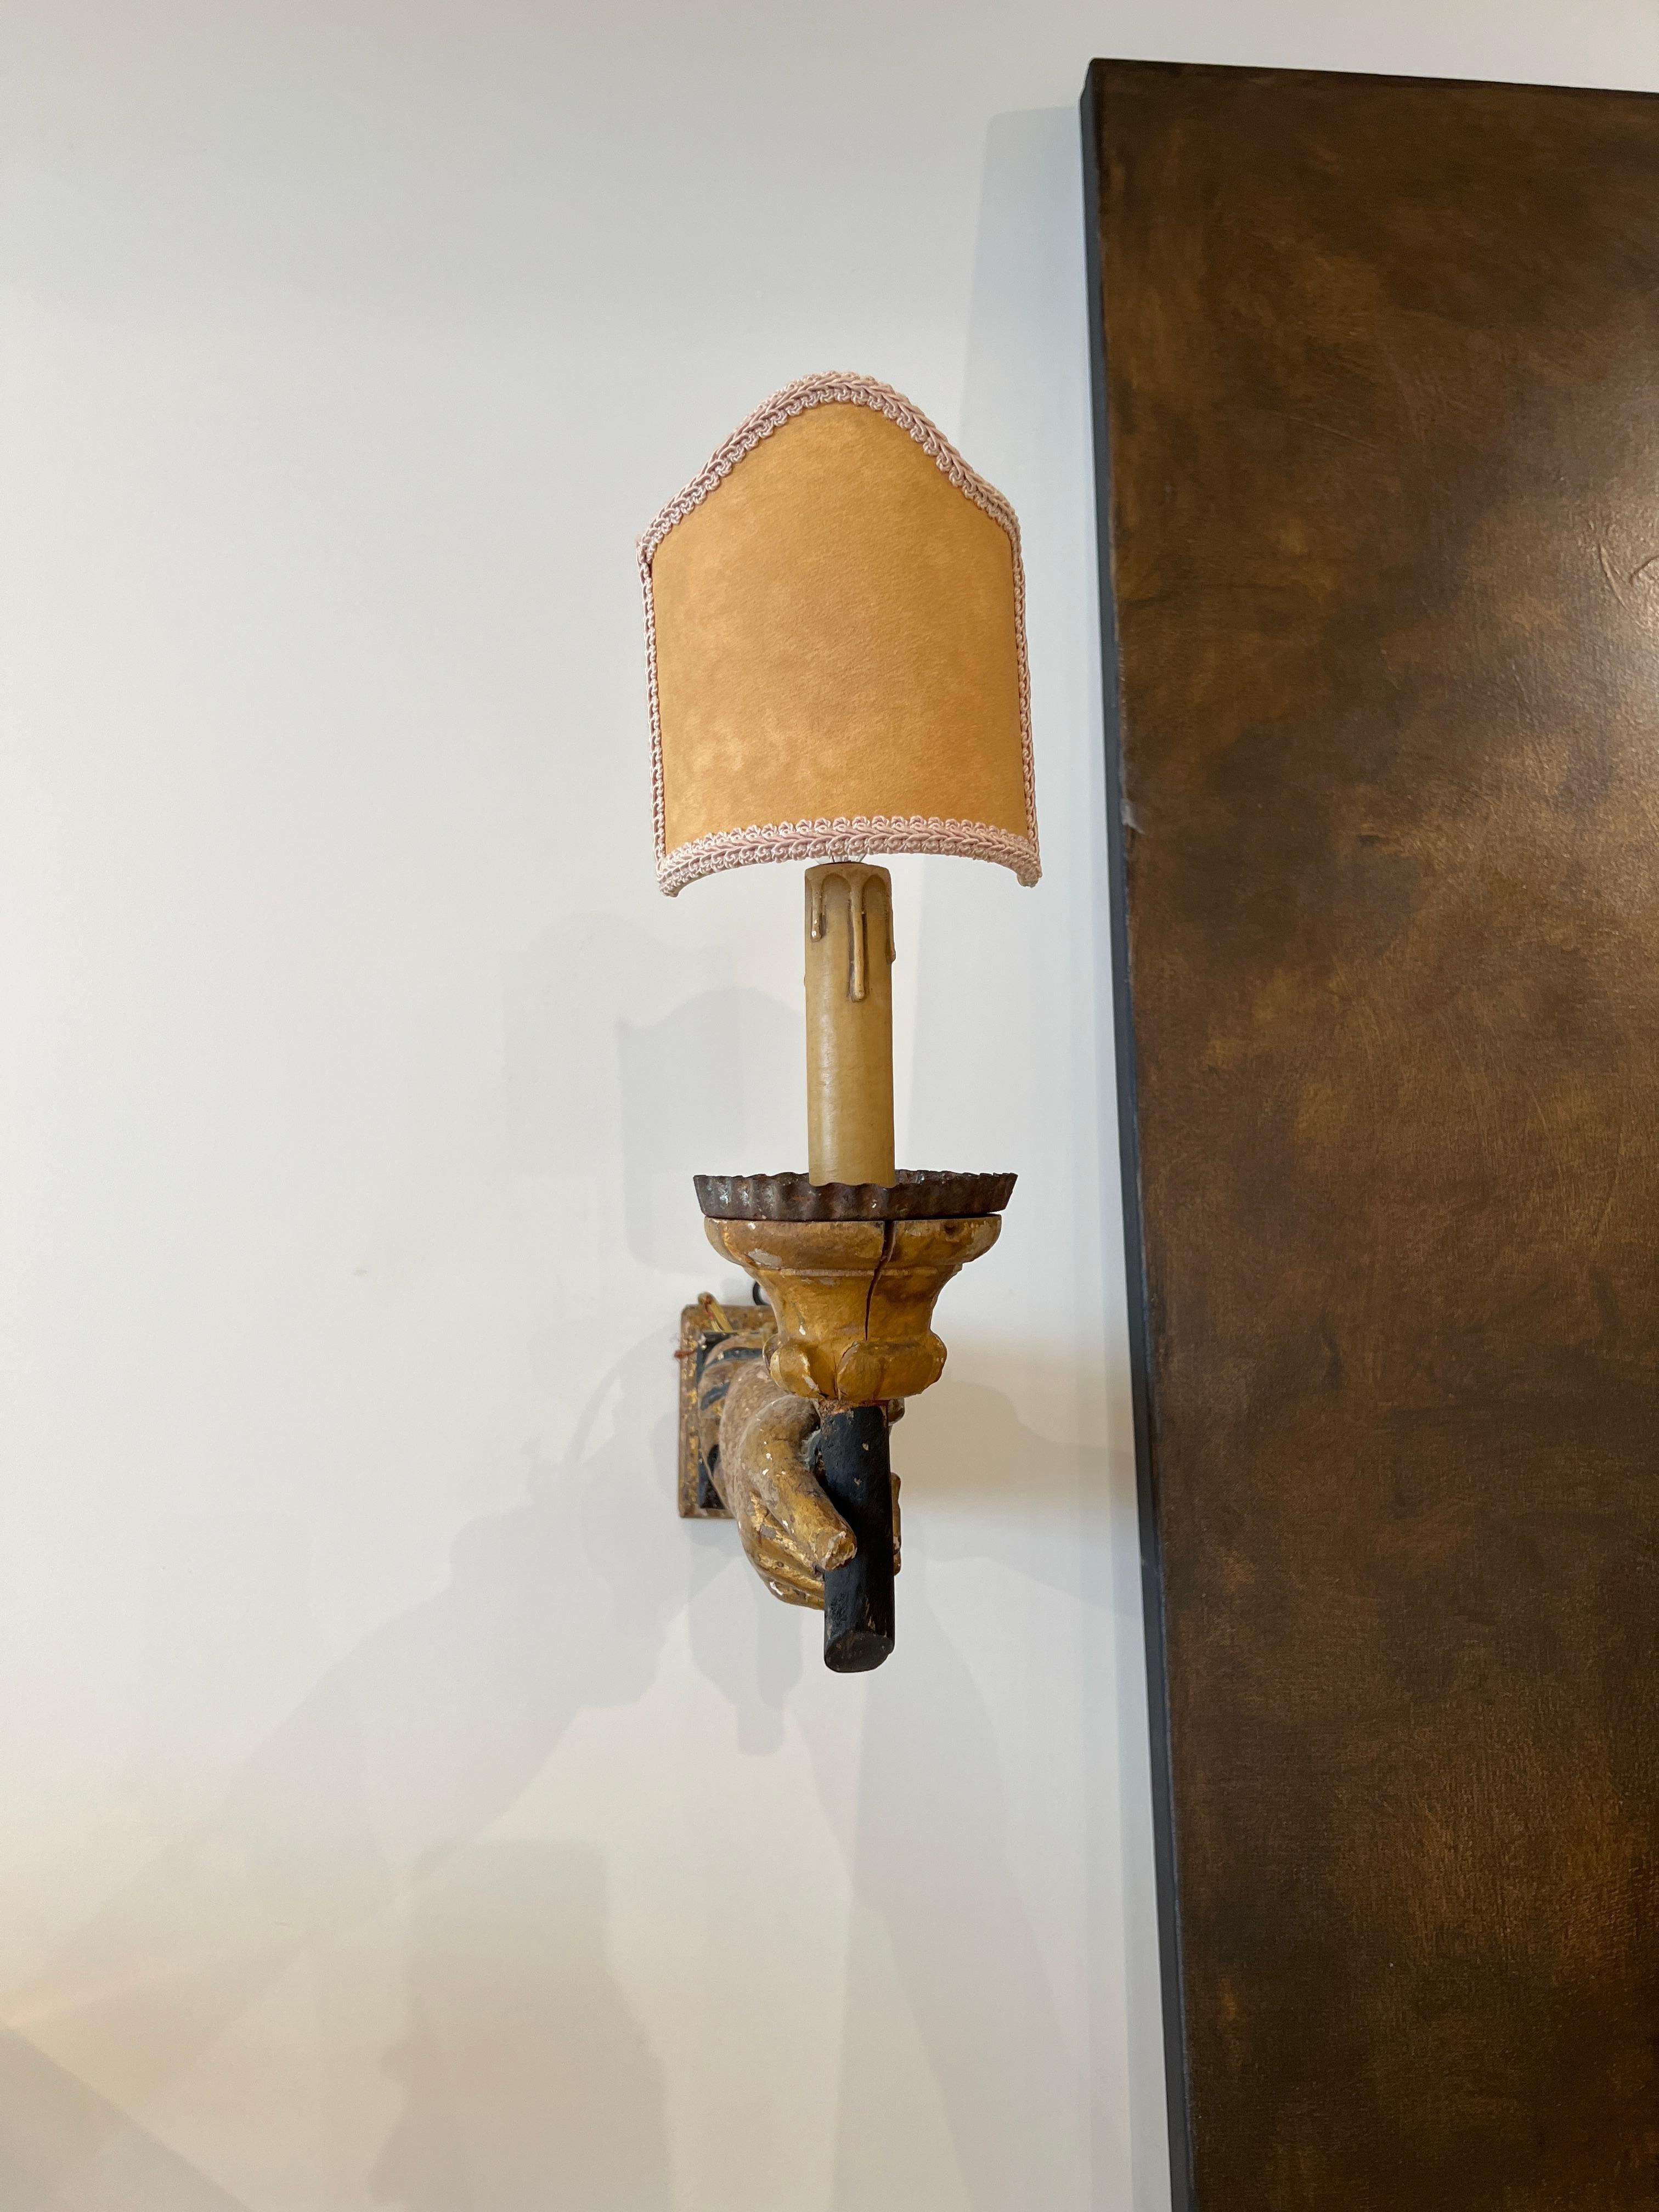 Rare paire d'appliques à bras italiennes du XVIIIe siècle avec abat-jour en forme de bouclier. Complément remarquable d'une salle d'eau ou d'un miroir au-dessus d'une cheminée.

Câblé pour les États-Unis mais non répertorié UL.